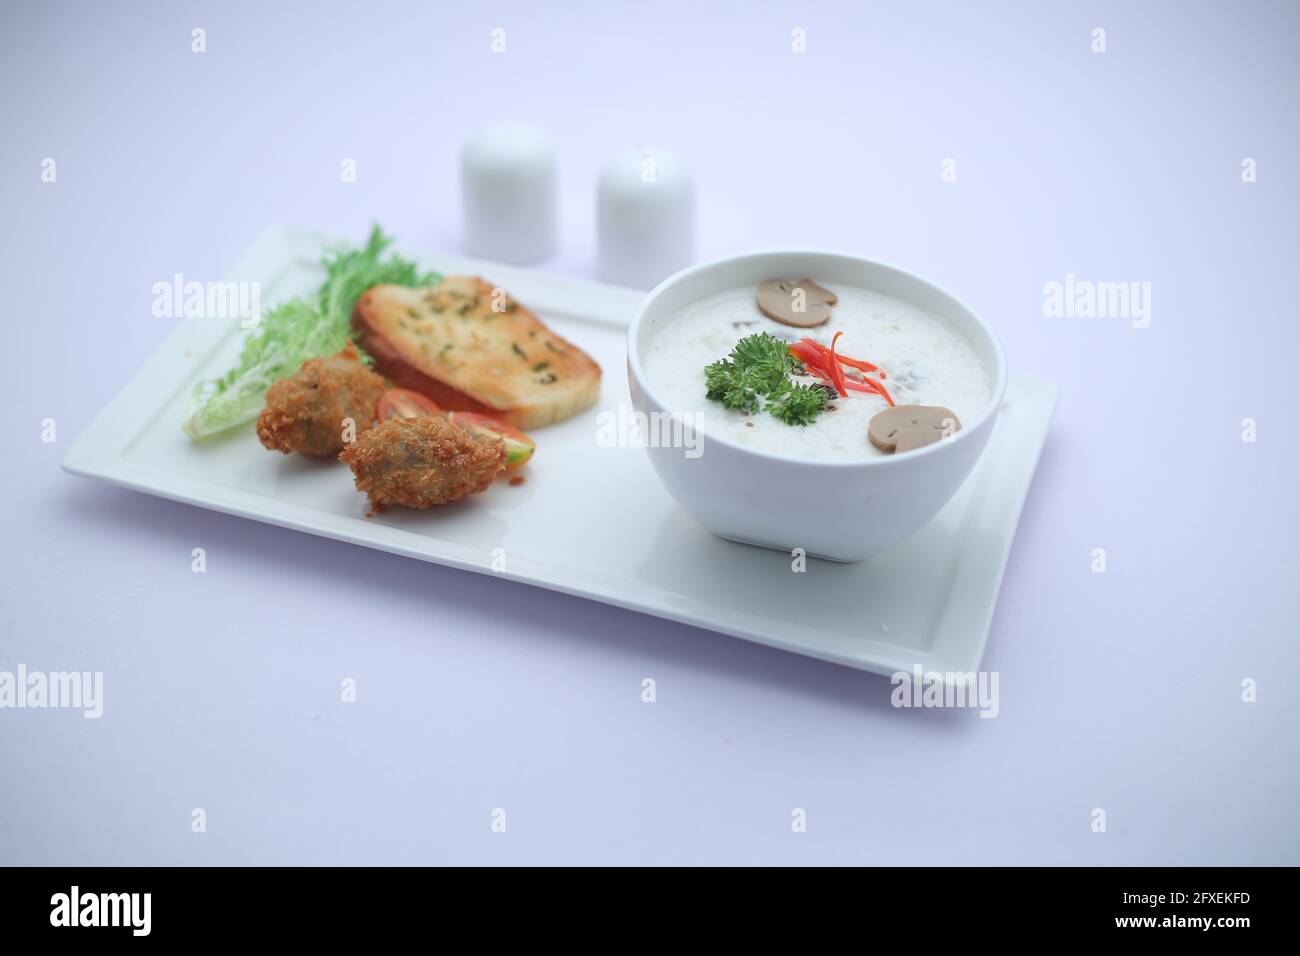 Crema di funghi zuppa disposta in una ciotola bianca con pane tostato e insalata di verdure fresche come contorno sistemato su una tavola da portata bianca Foto Stock